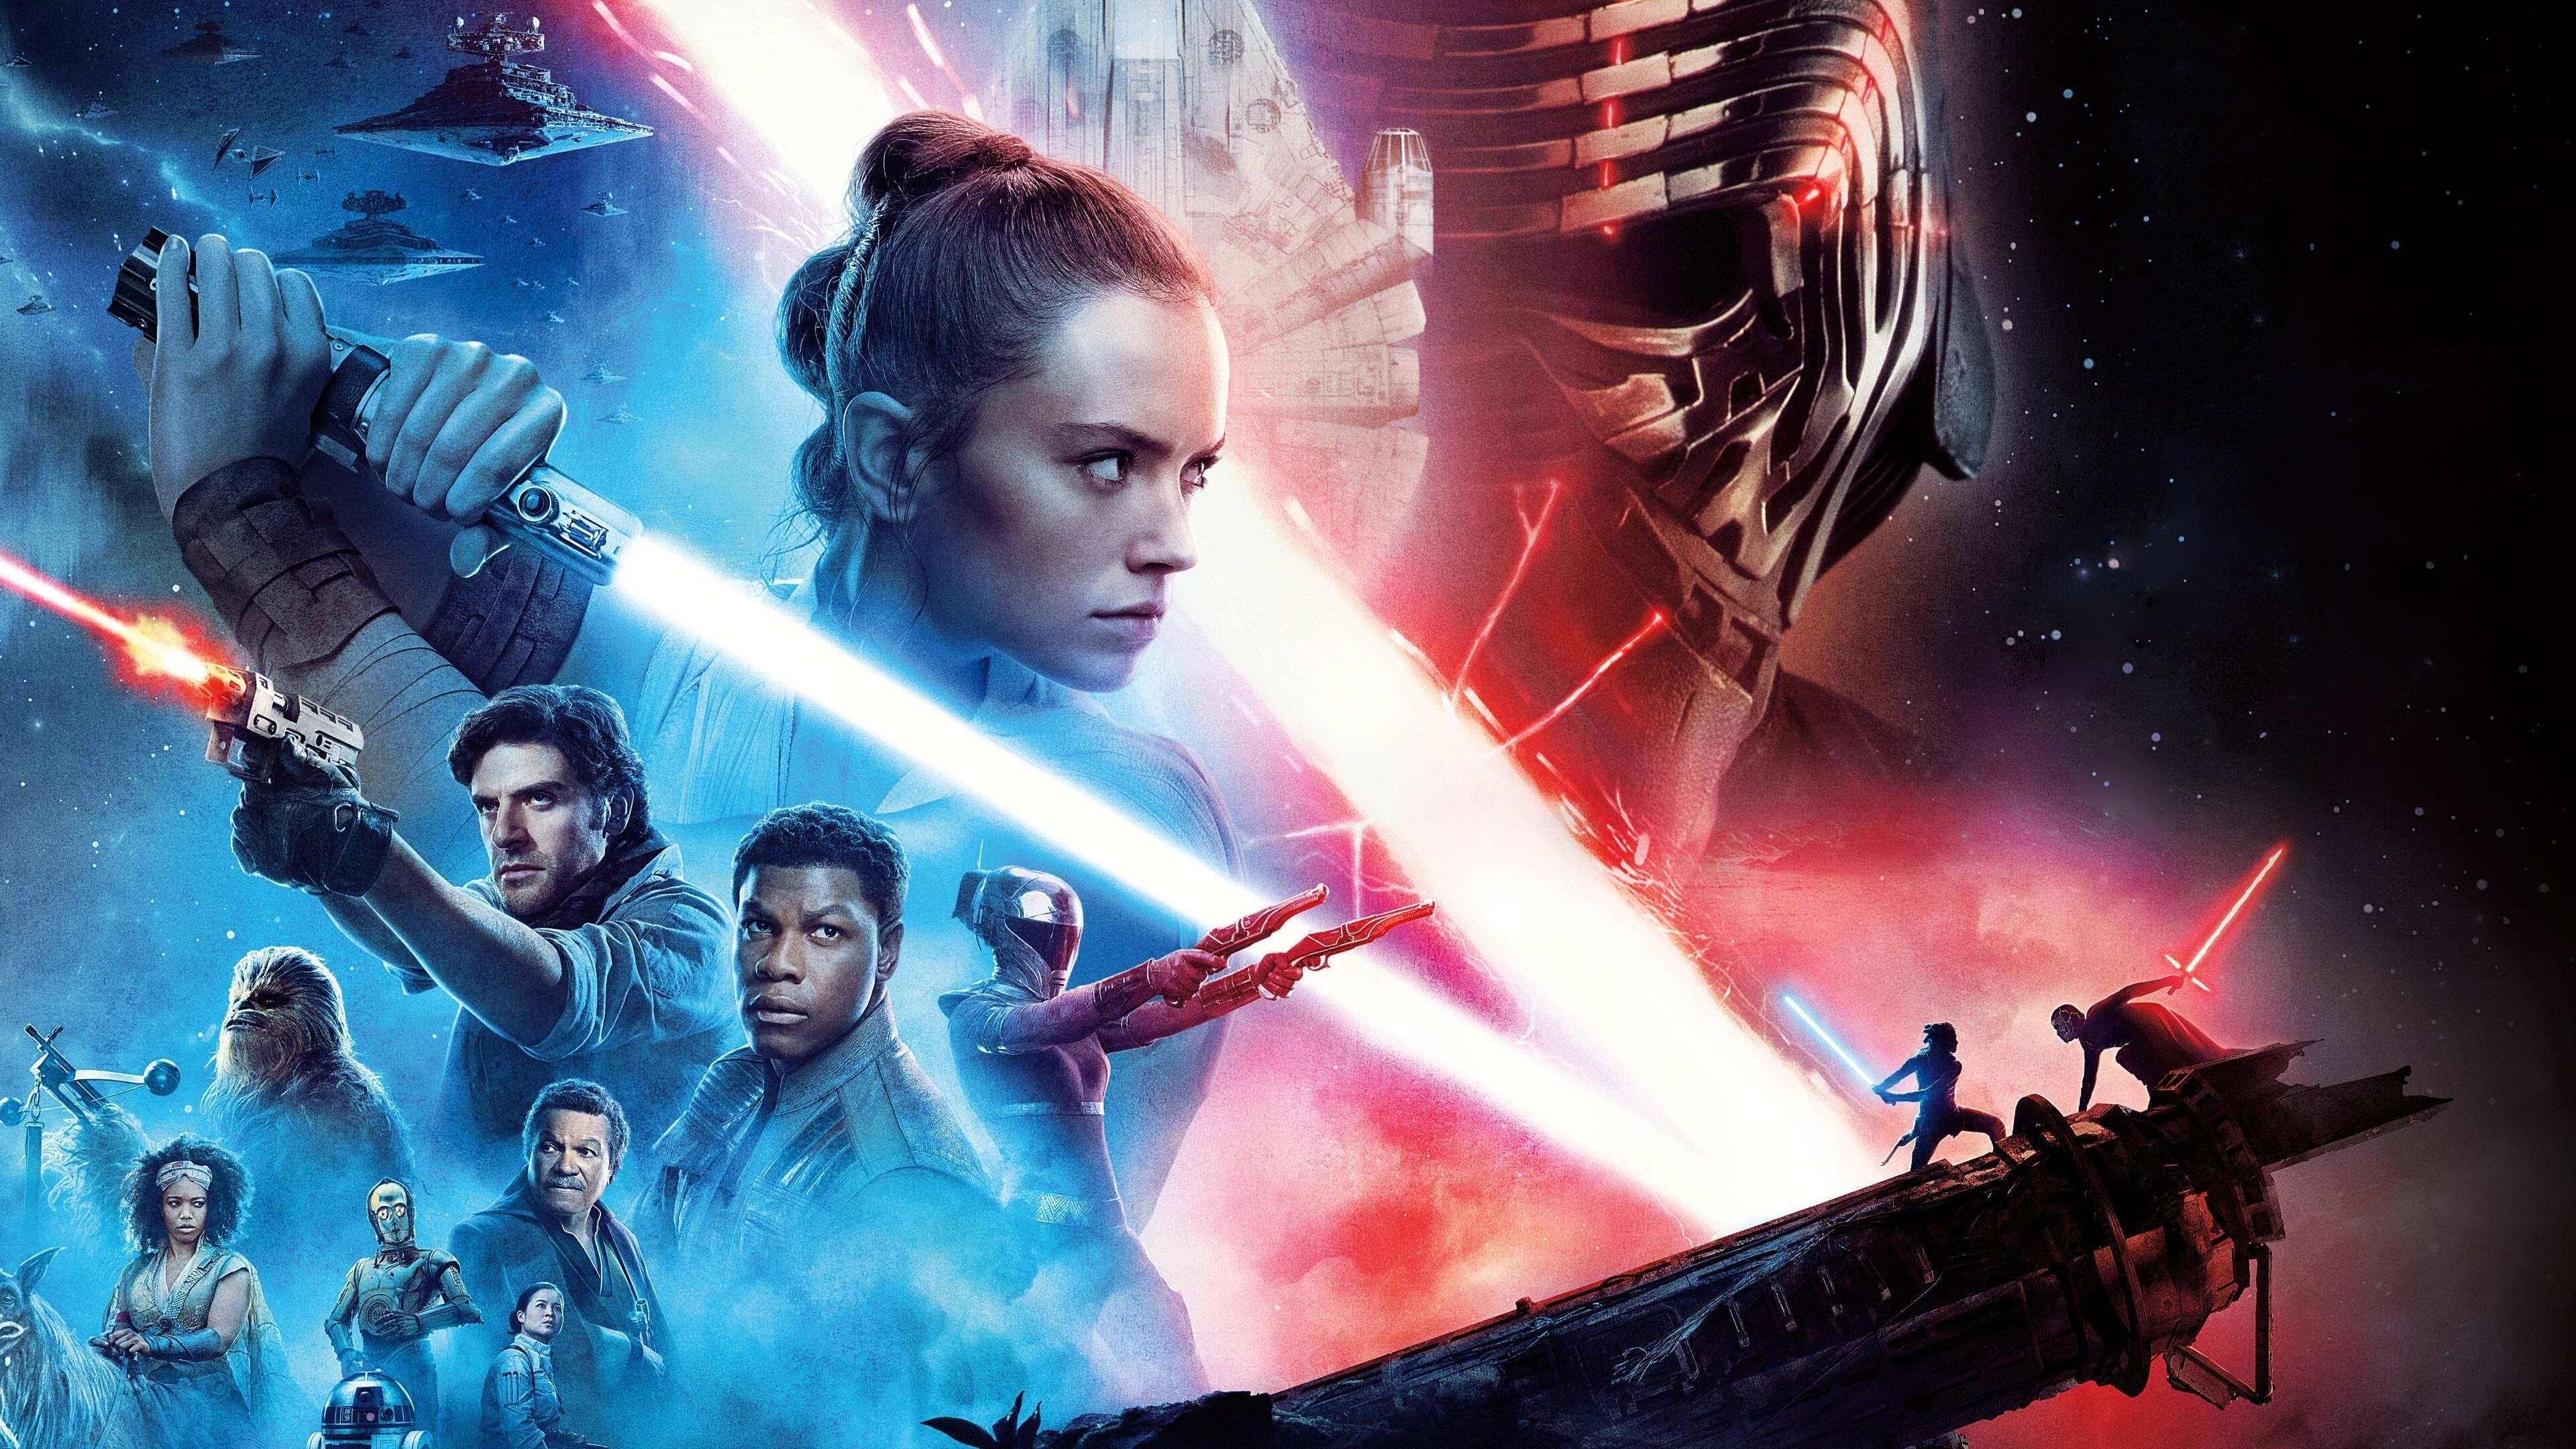 Image du film Star Wars Episode IX : l'ascension de Skywalker aujkgst3vxpjozhzh4nmfs0xwiujpg